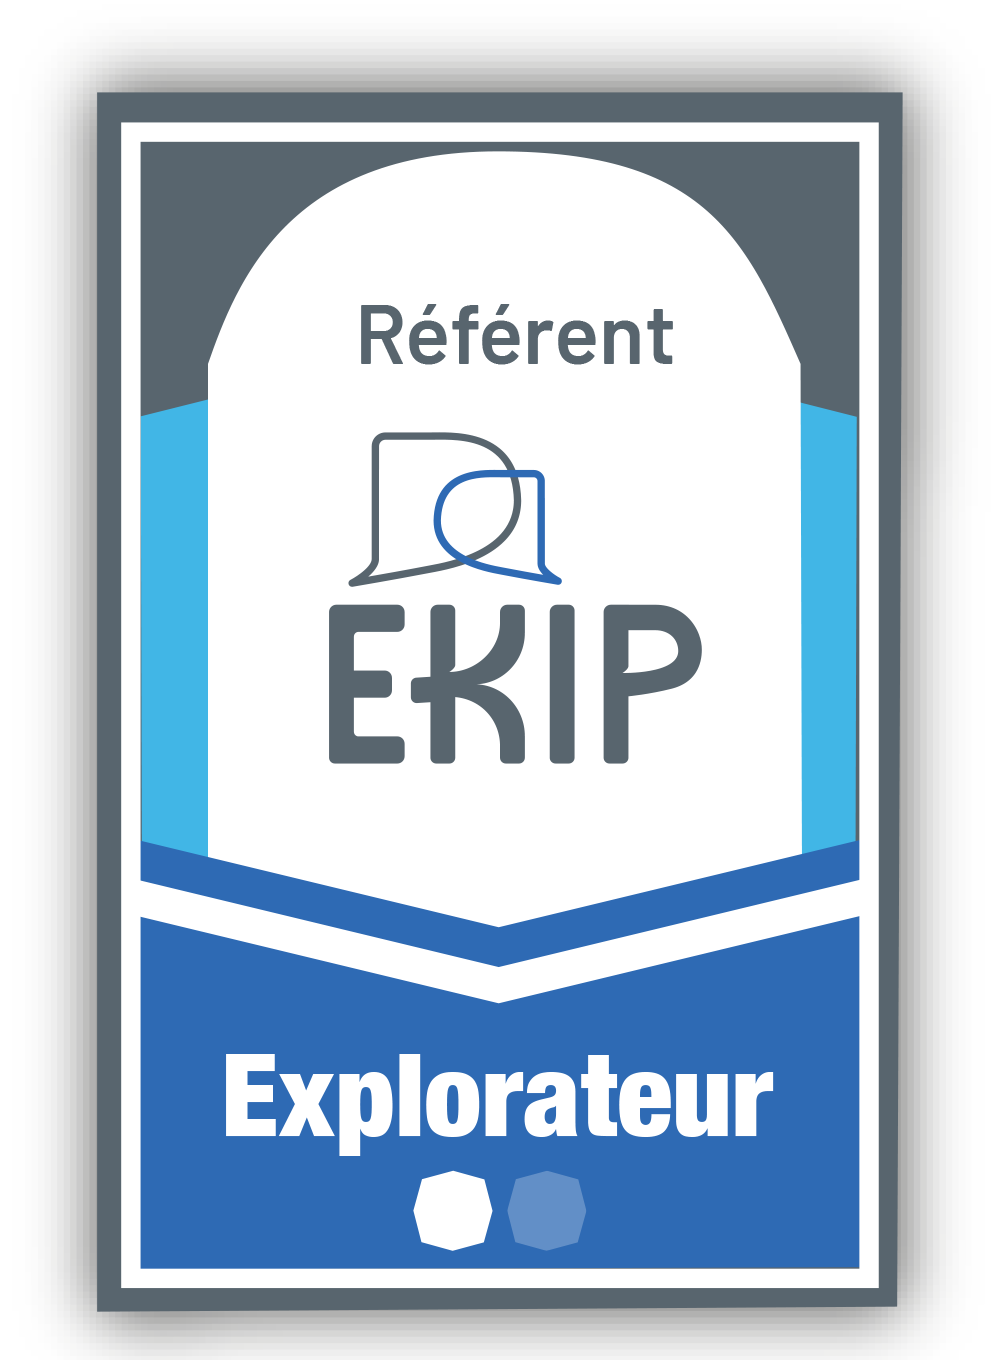 Référent ÉKIP 1 - Explorateur